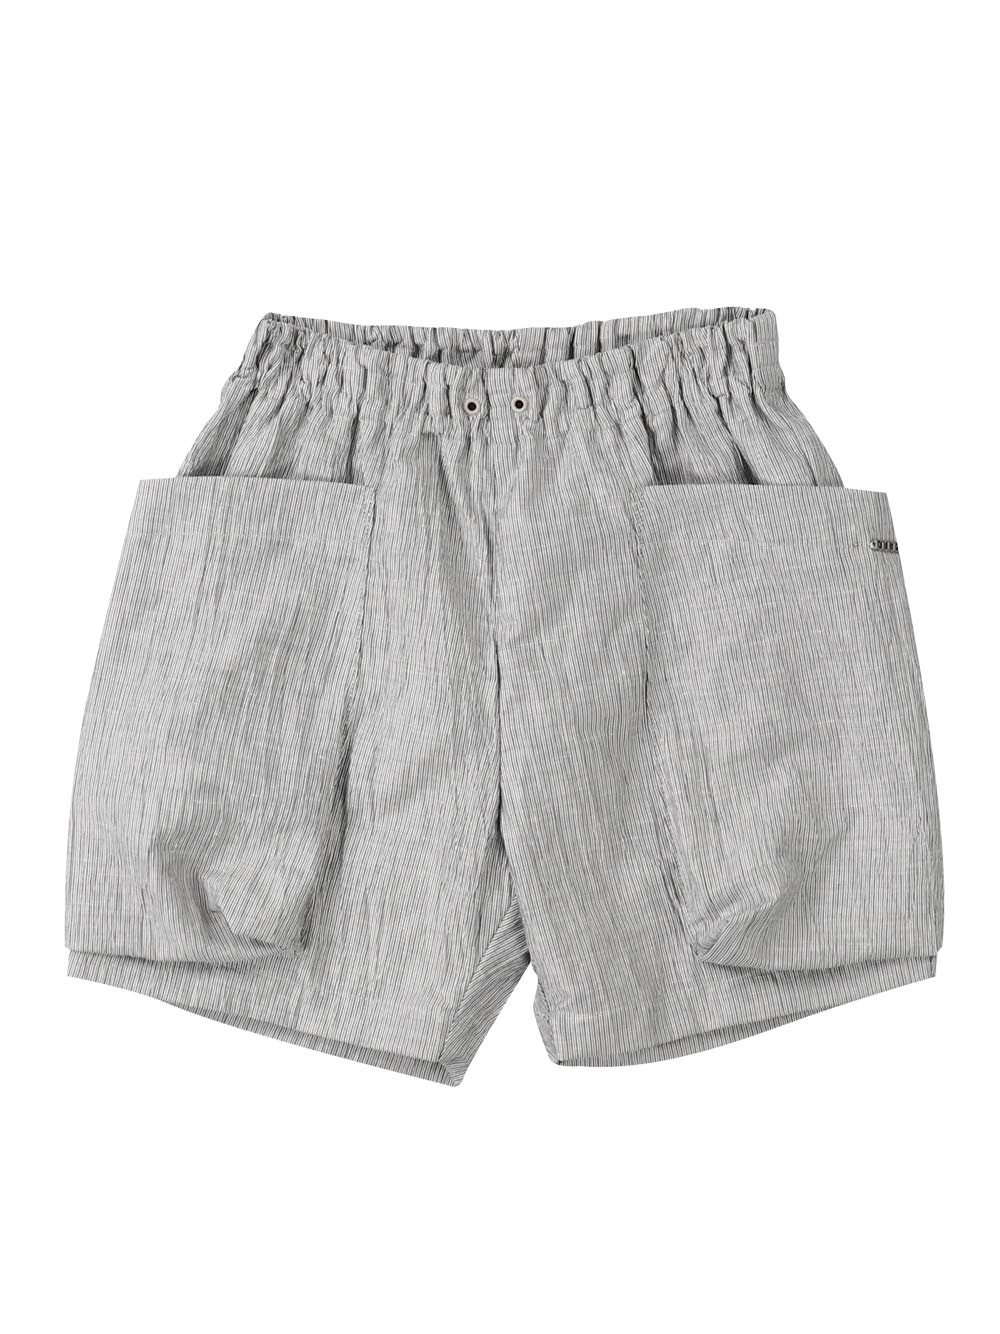 Big Pockets Grey Shorts